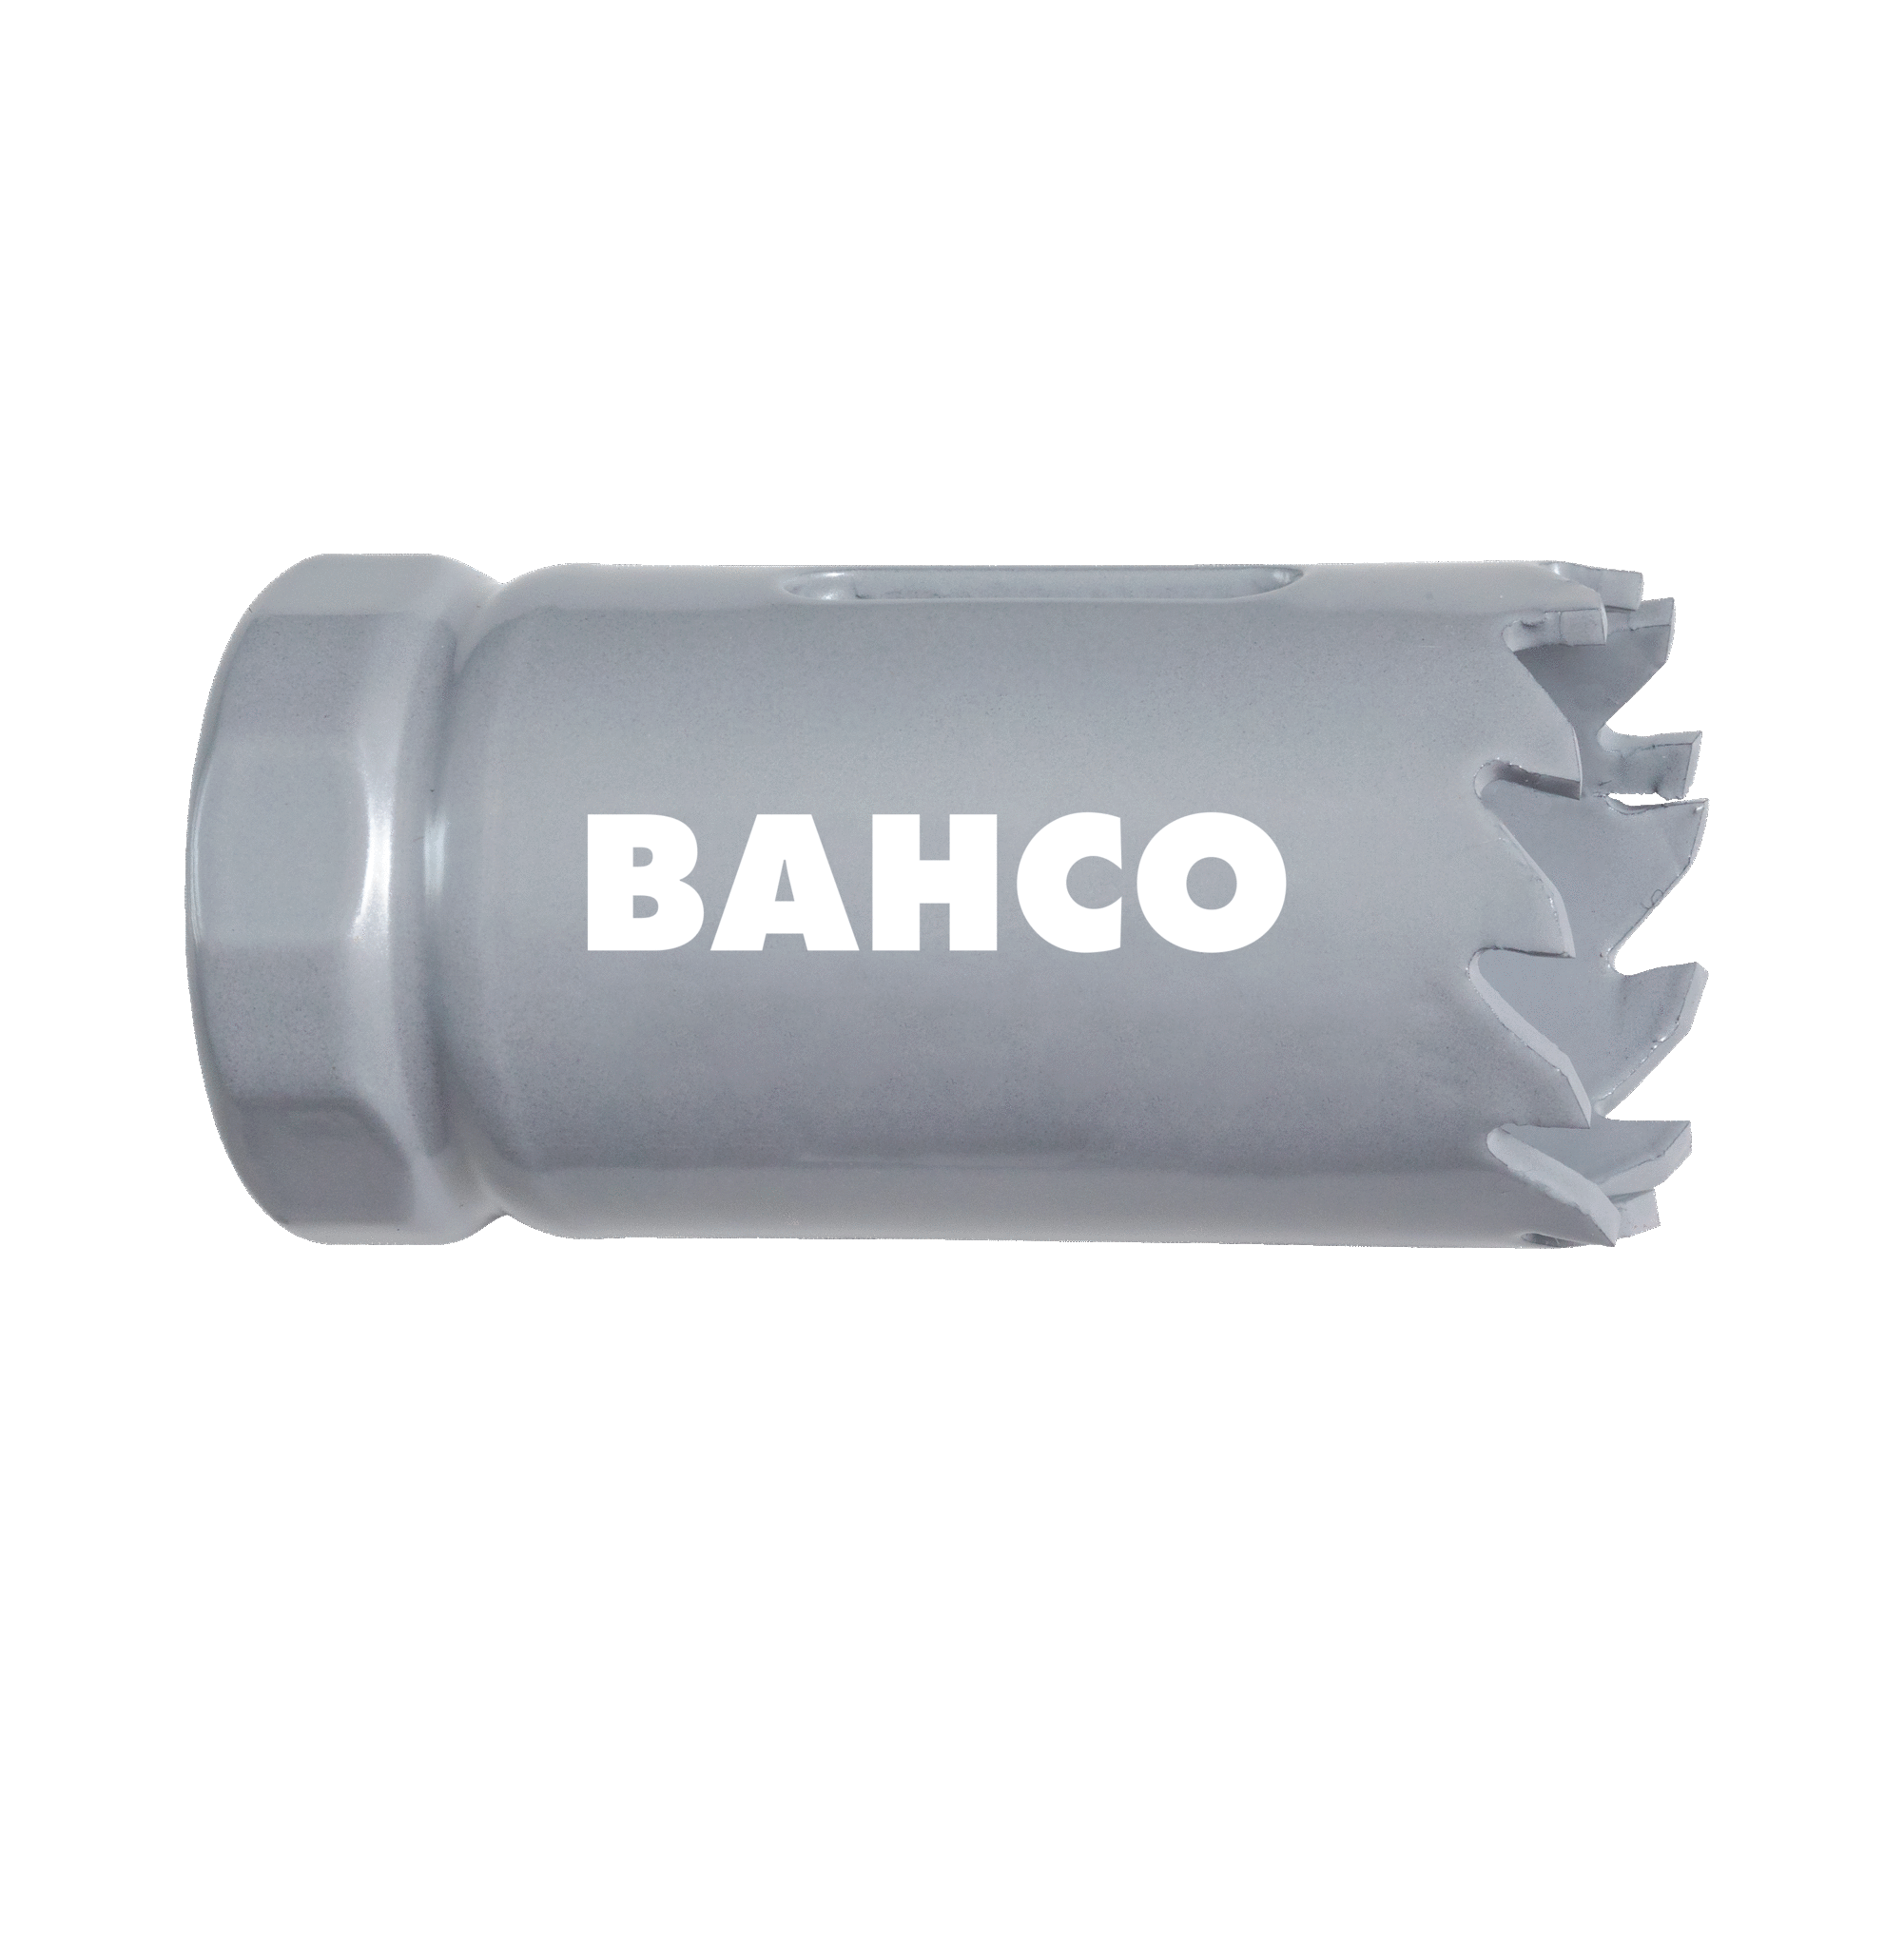 Кольцевые пилы с твердосплавными напайками BAHCO 3832-79